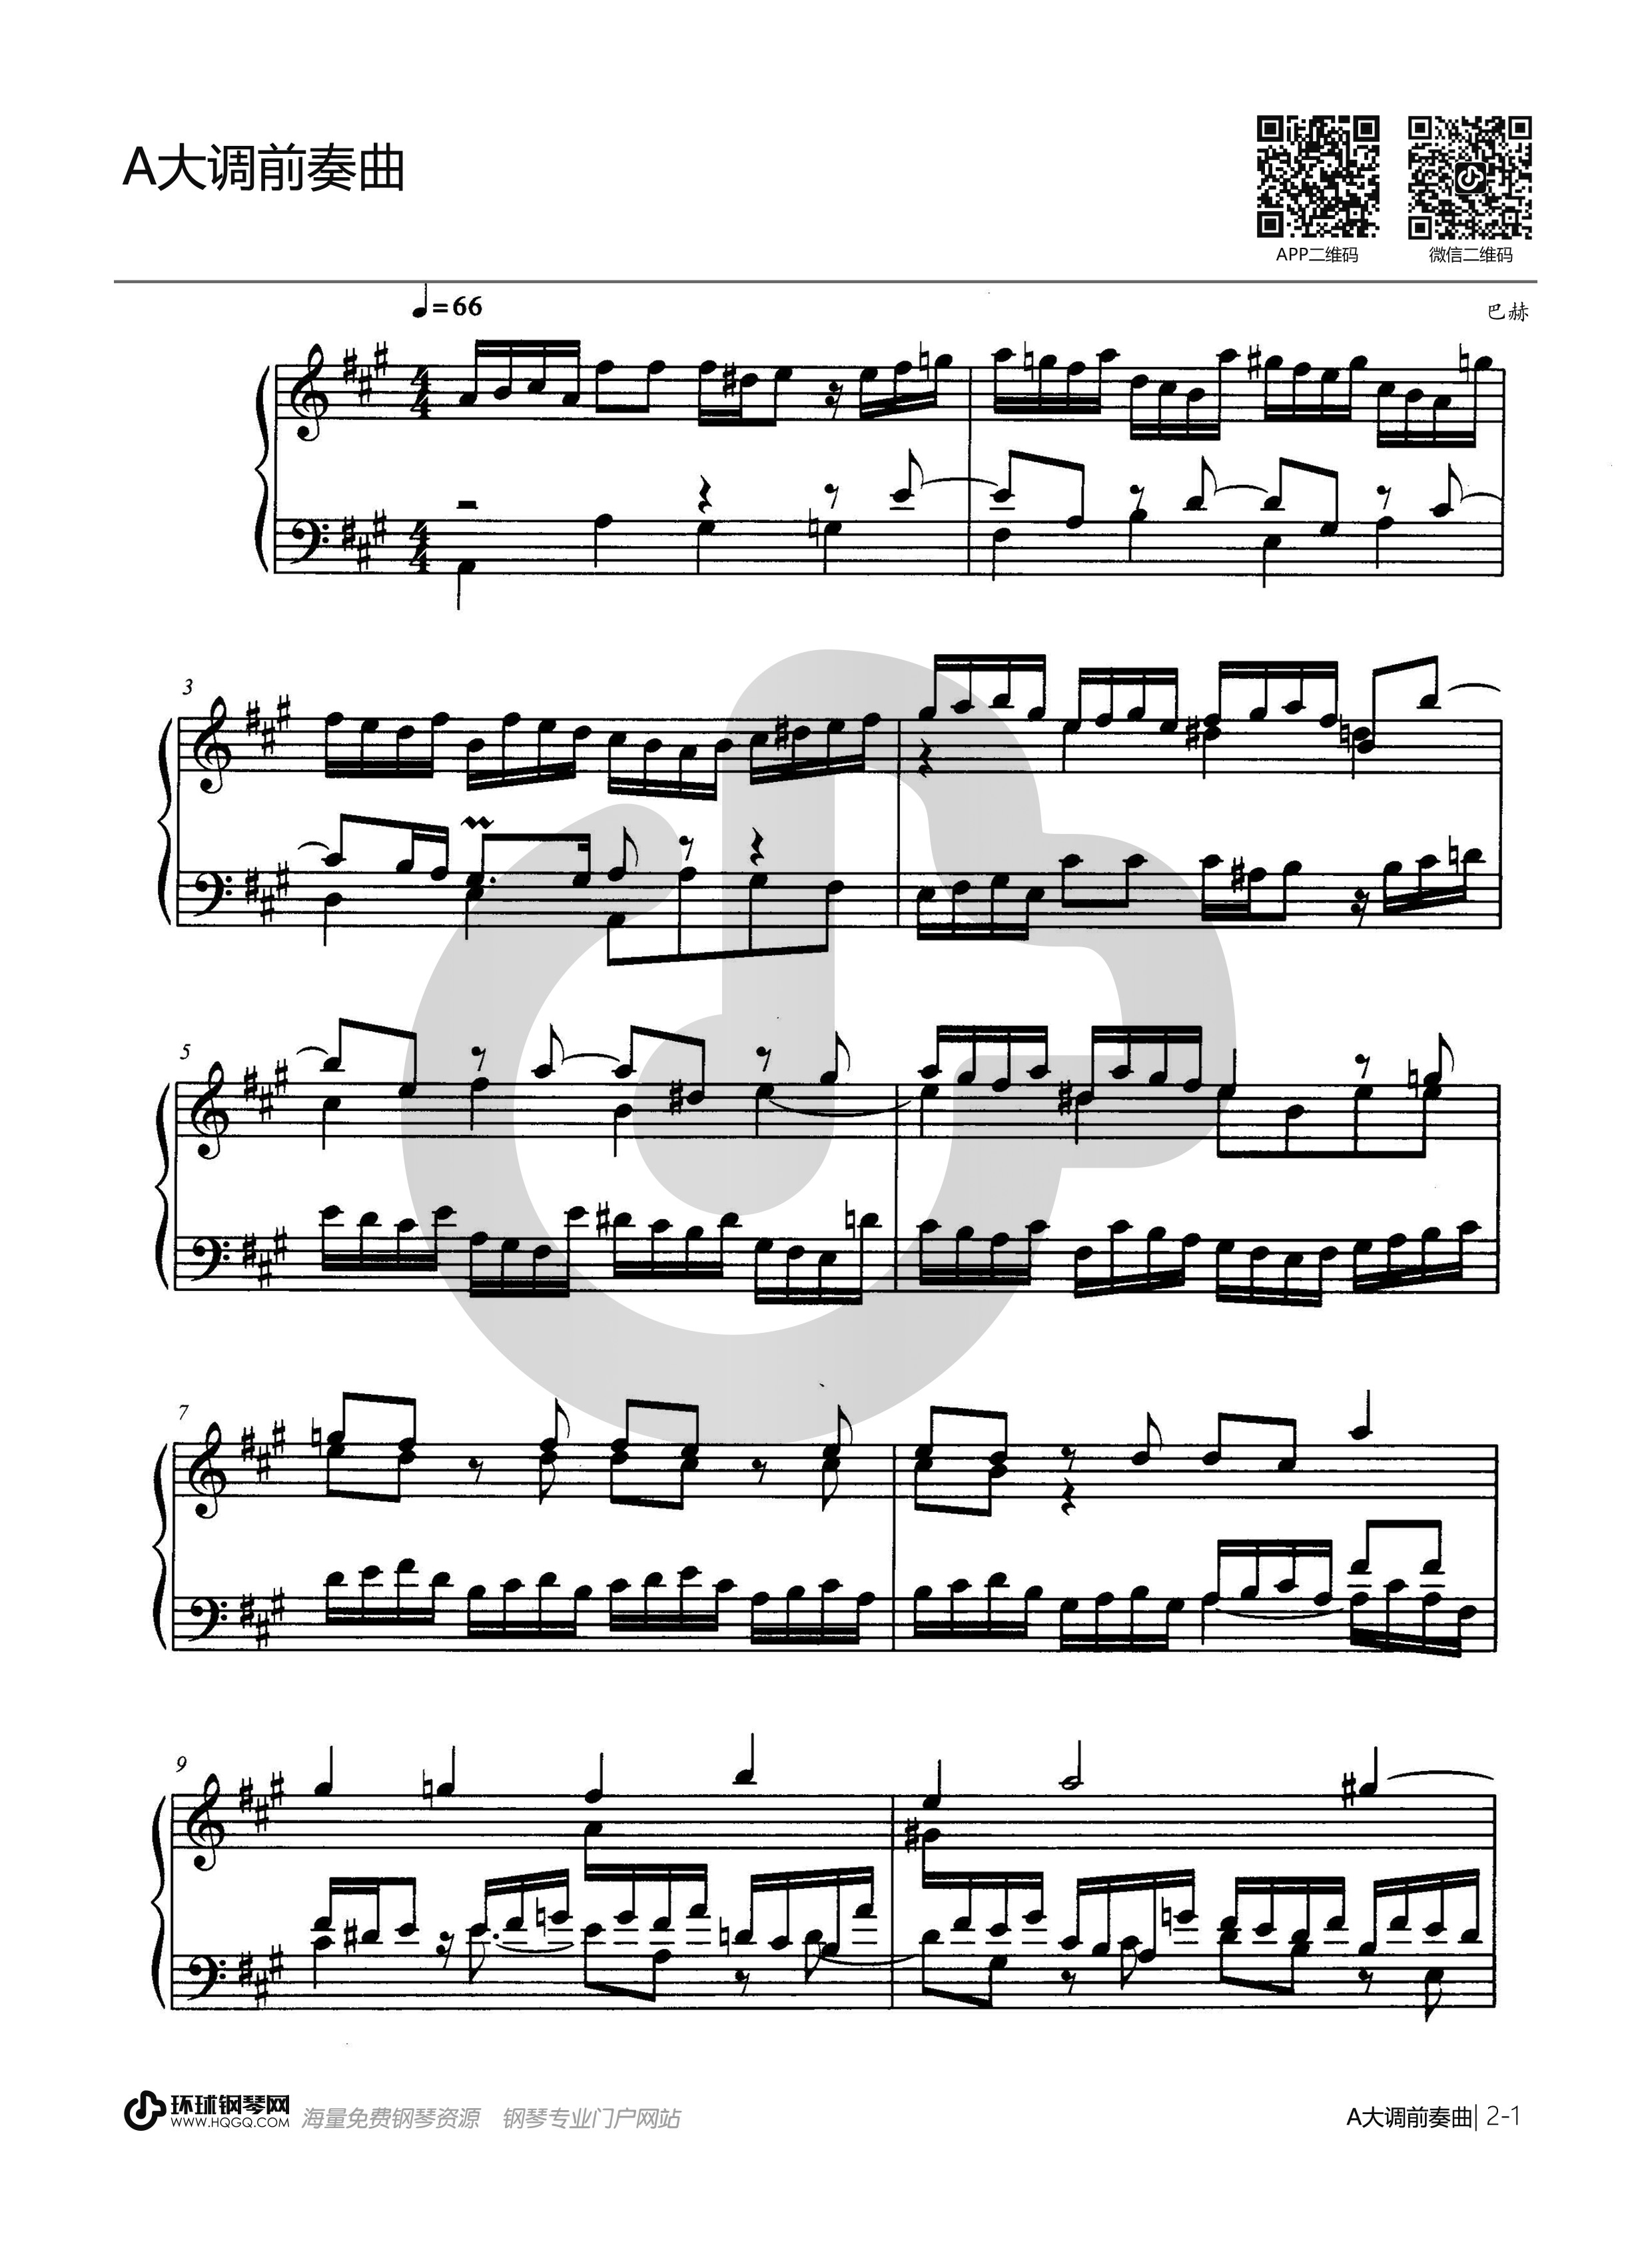 《小步舞曲(G大调,钢琴谱》-巴赫-全程指法,巴赫|弹琴吧|钢琴谱|吉他谱|钢琴曲|乐谱|五线谱|简谱|高清免费下载|蛐蛐钢琴网